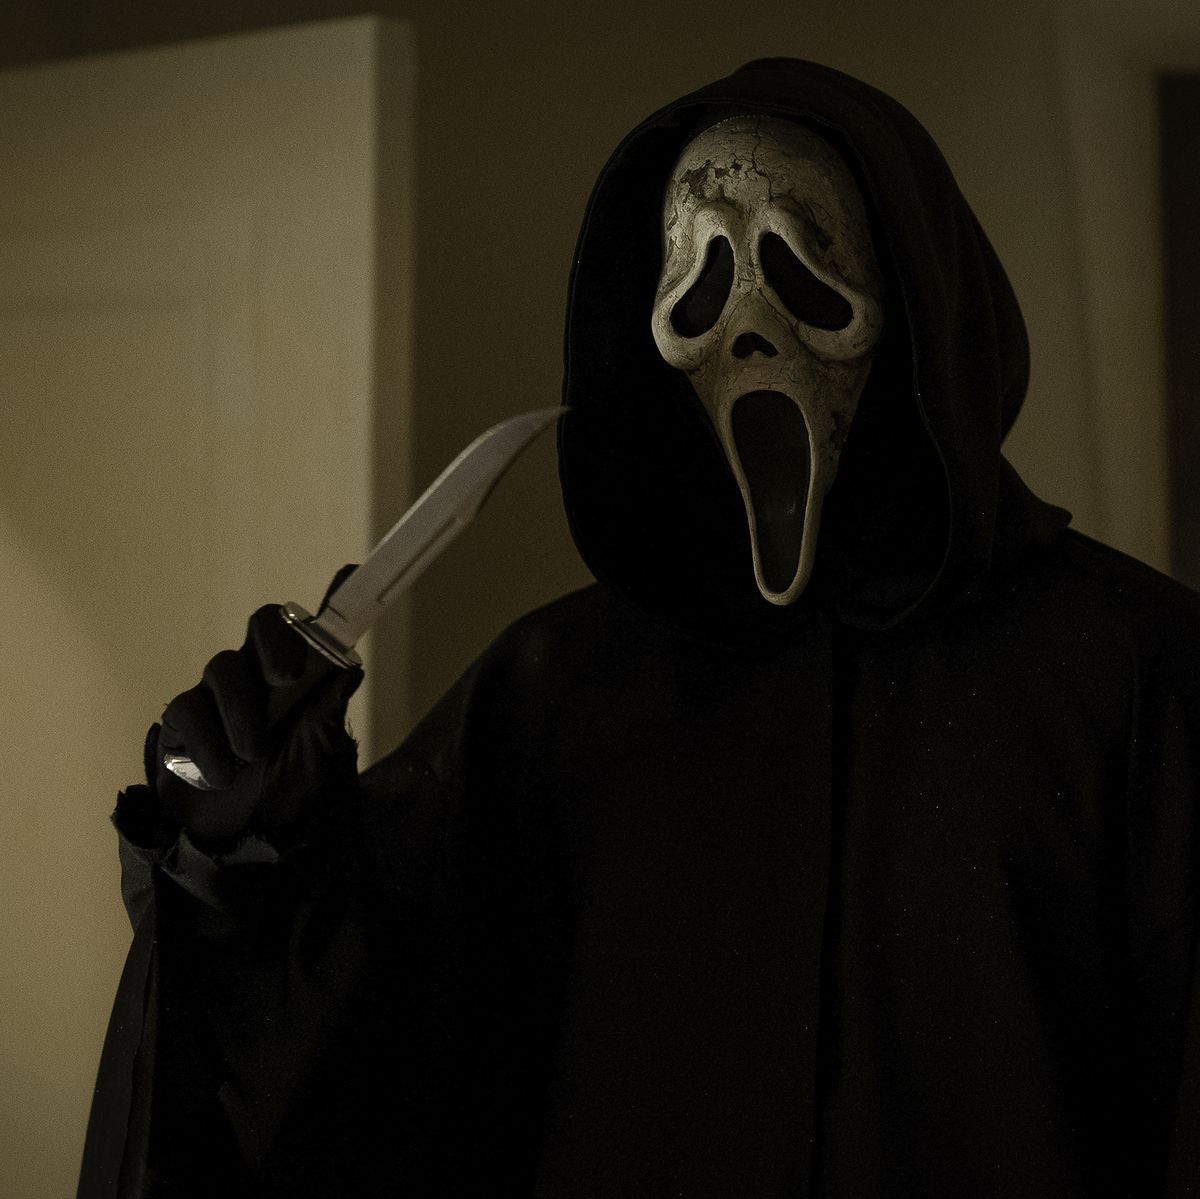 Scream VI First Reactions: Critics Praise 'Especially Vicious' Ghostface